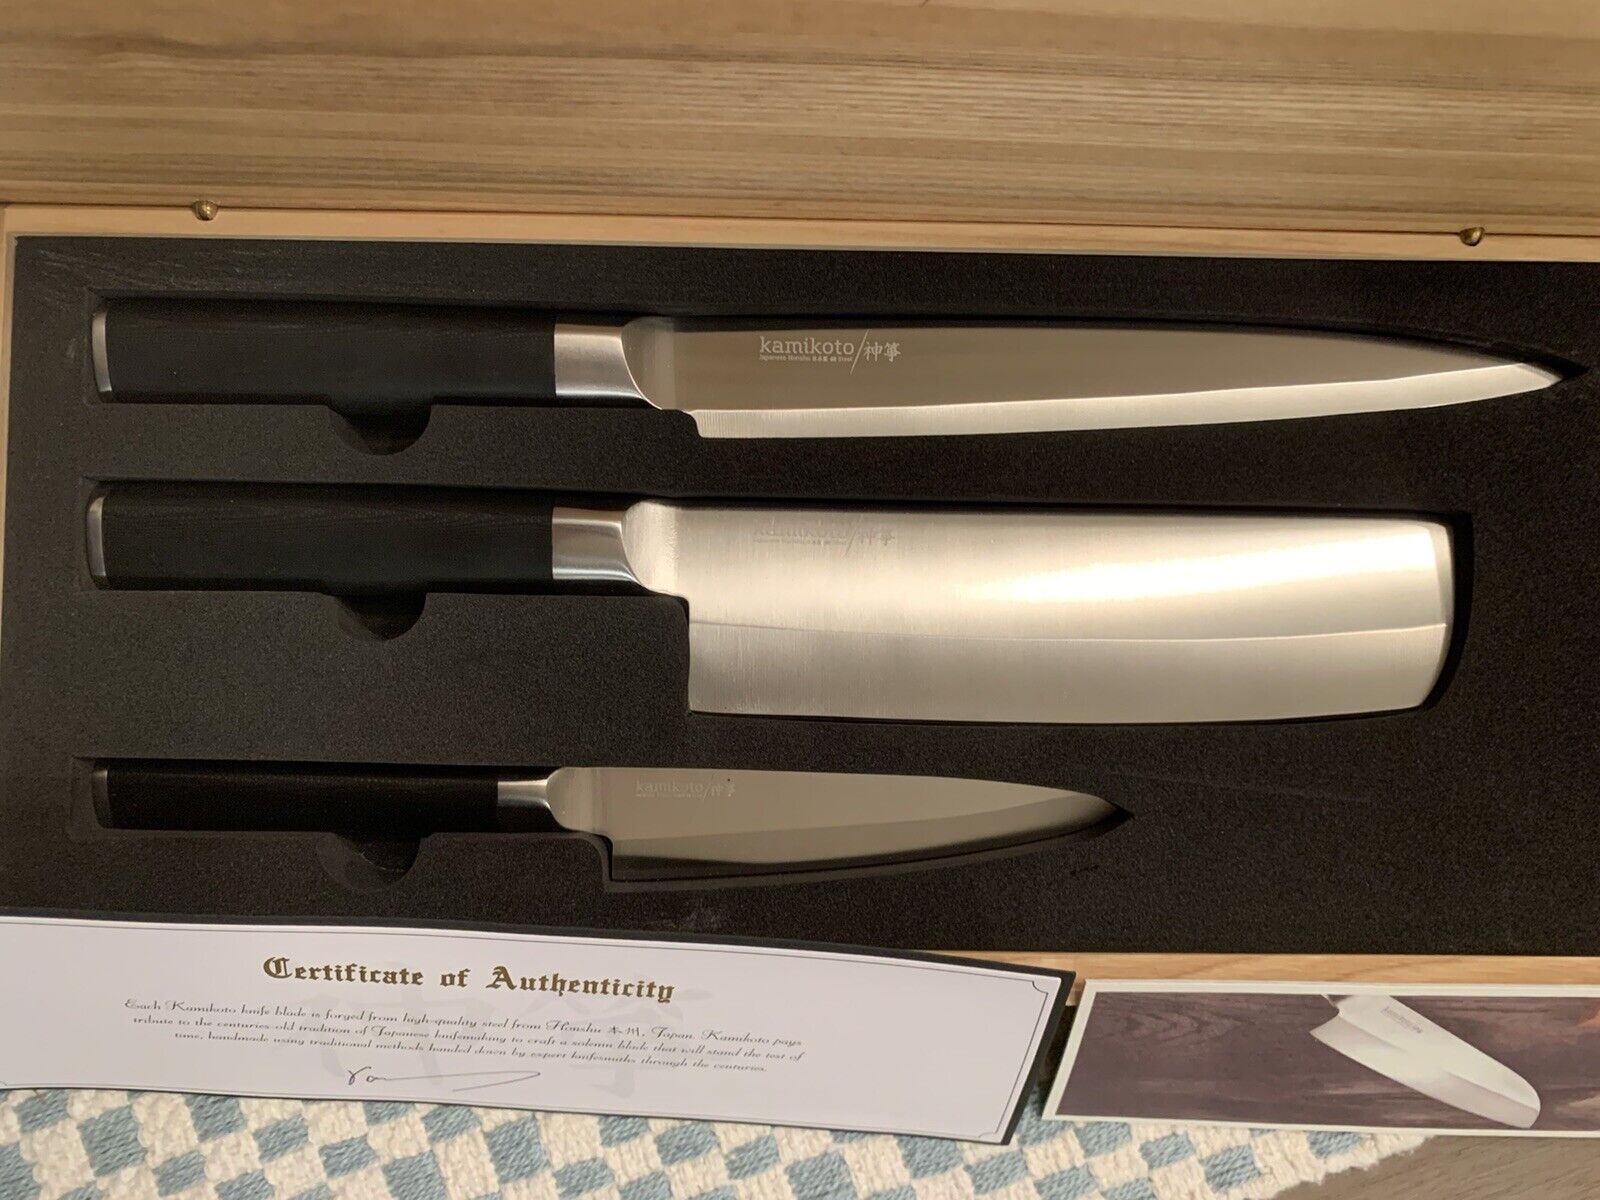 kamikoto knives review